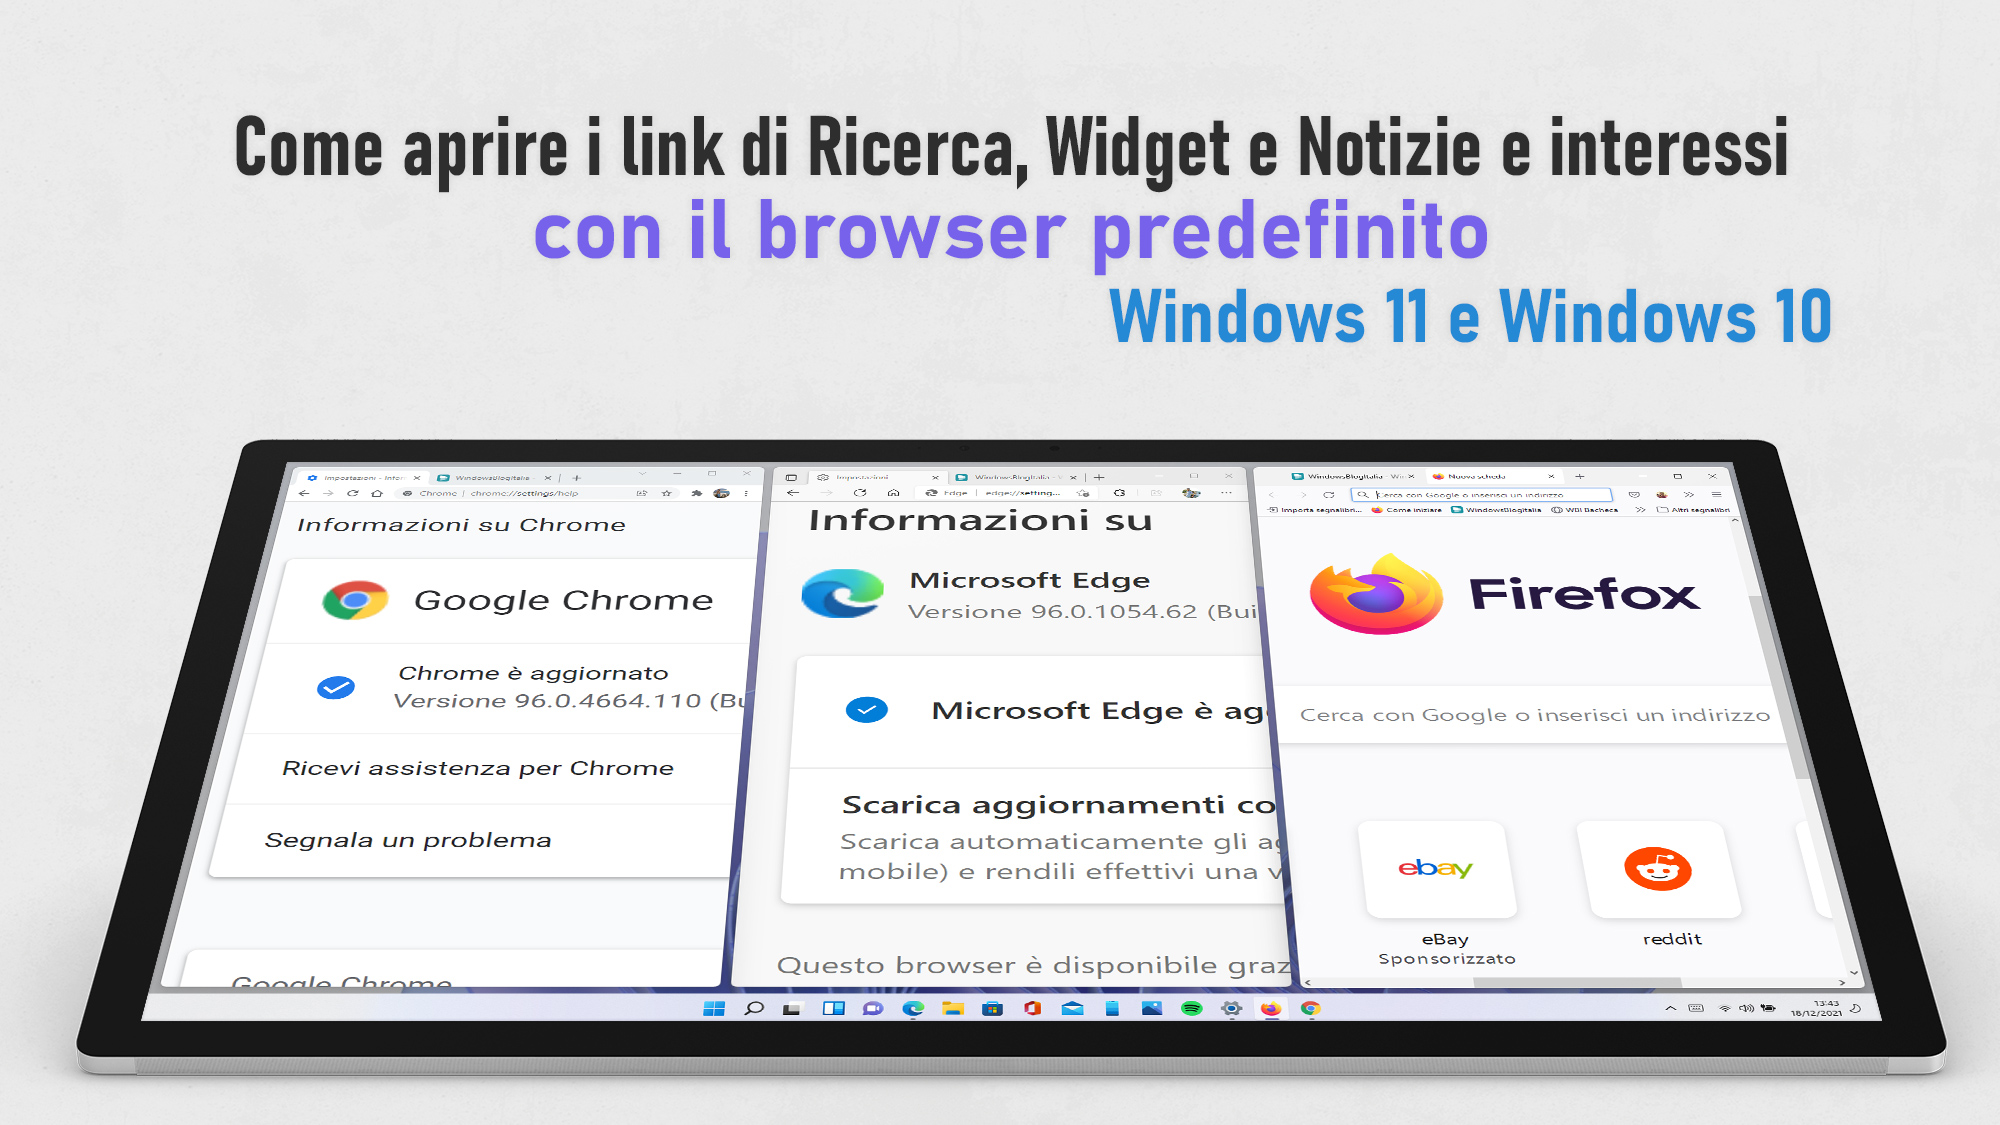 Windows 11 e Windows 10 - Come aprire i link di Notizie e interessi, Ricerca e Widget nel browser predefinito